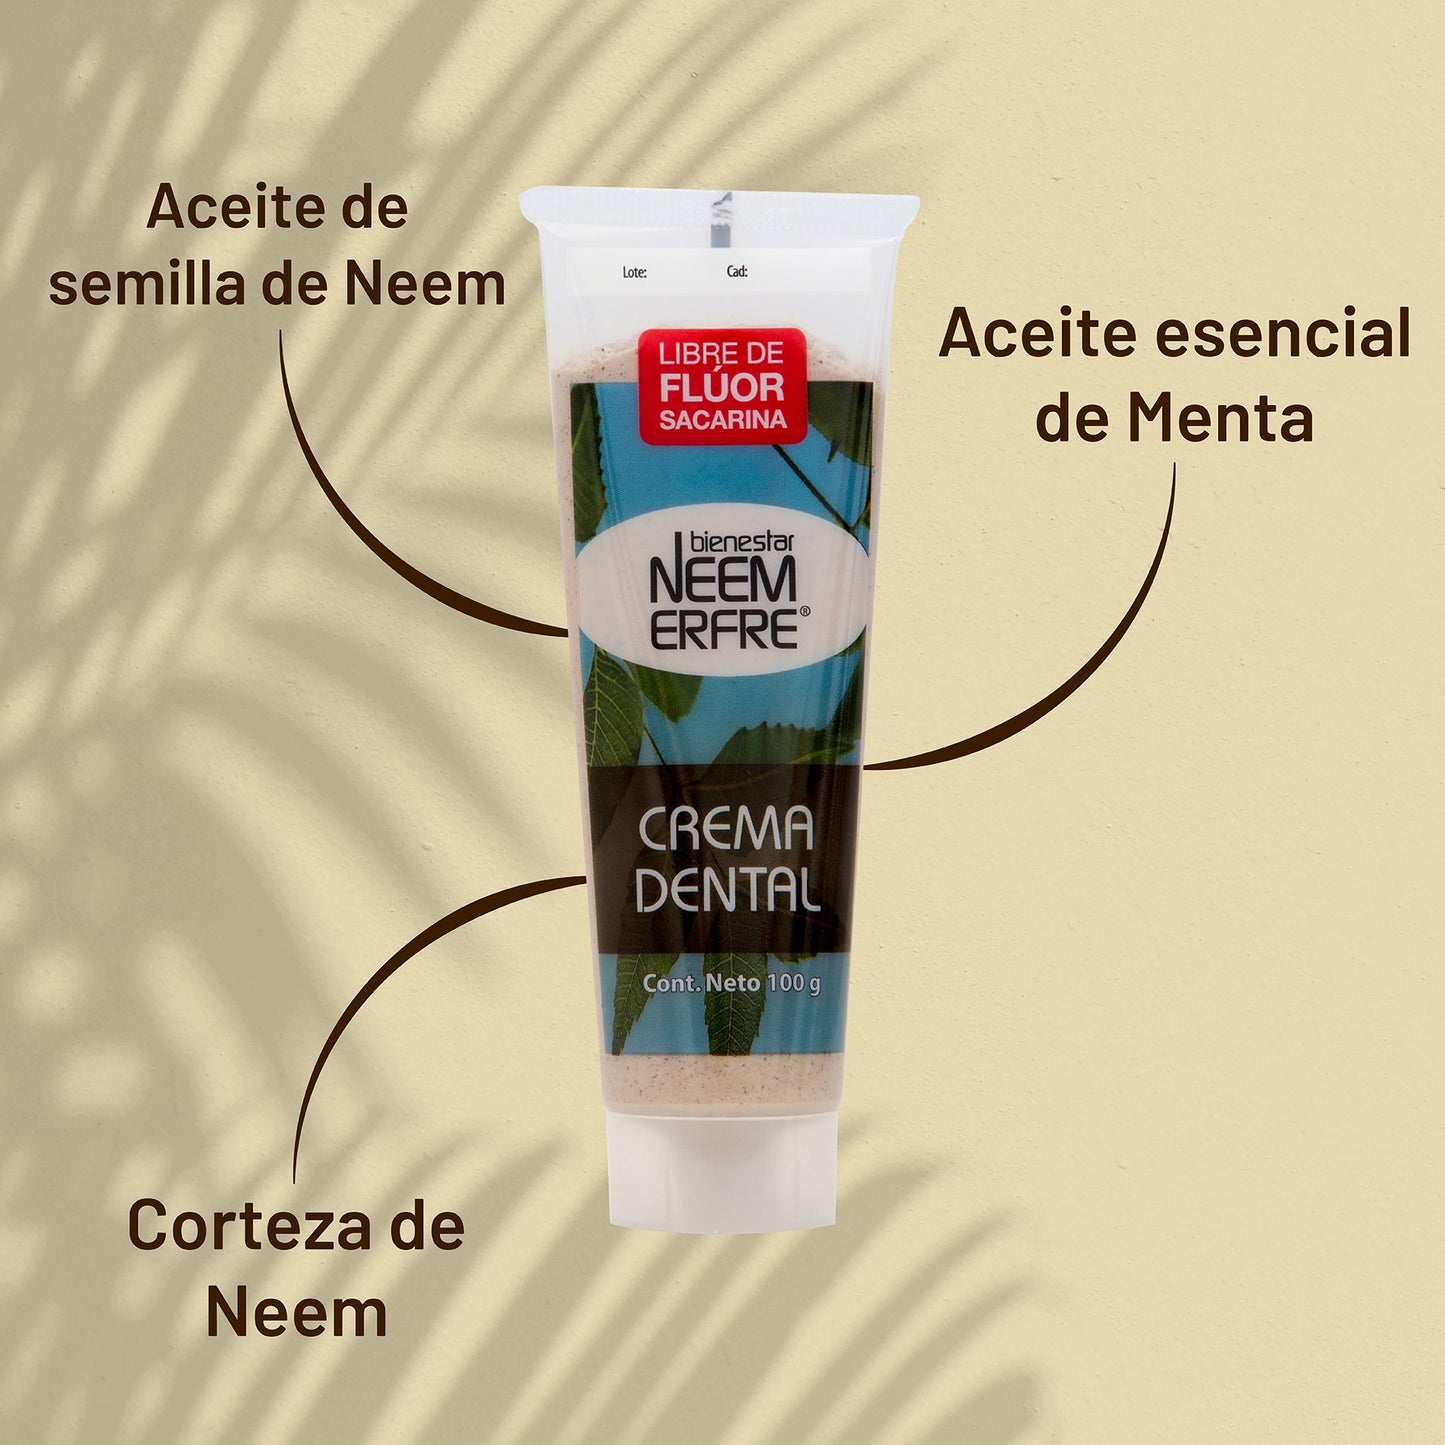 Crema dental de corteza de neem sabor menta